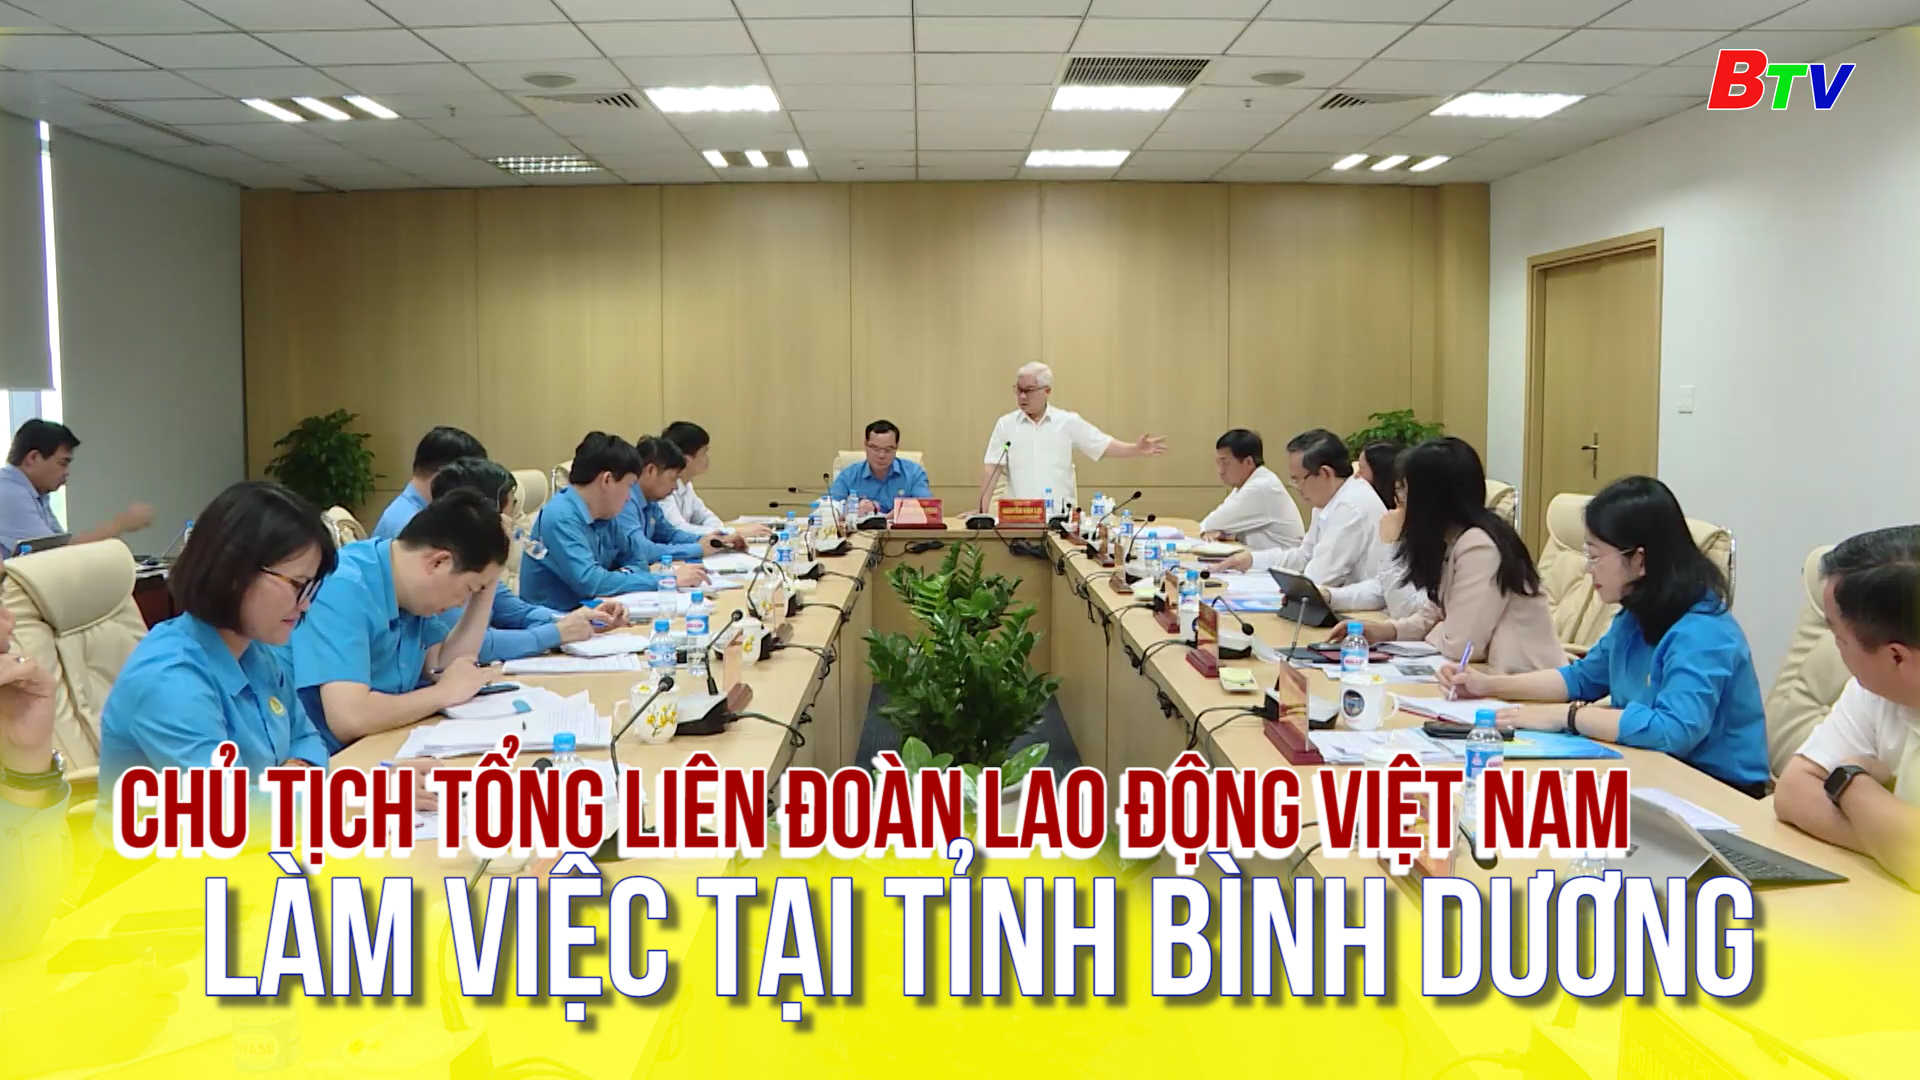 Chủ tịch Tổng Liên đoàn Lao động Việt Nam làm việc tại tỉnh Bình Dương